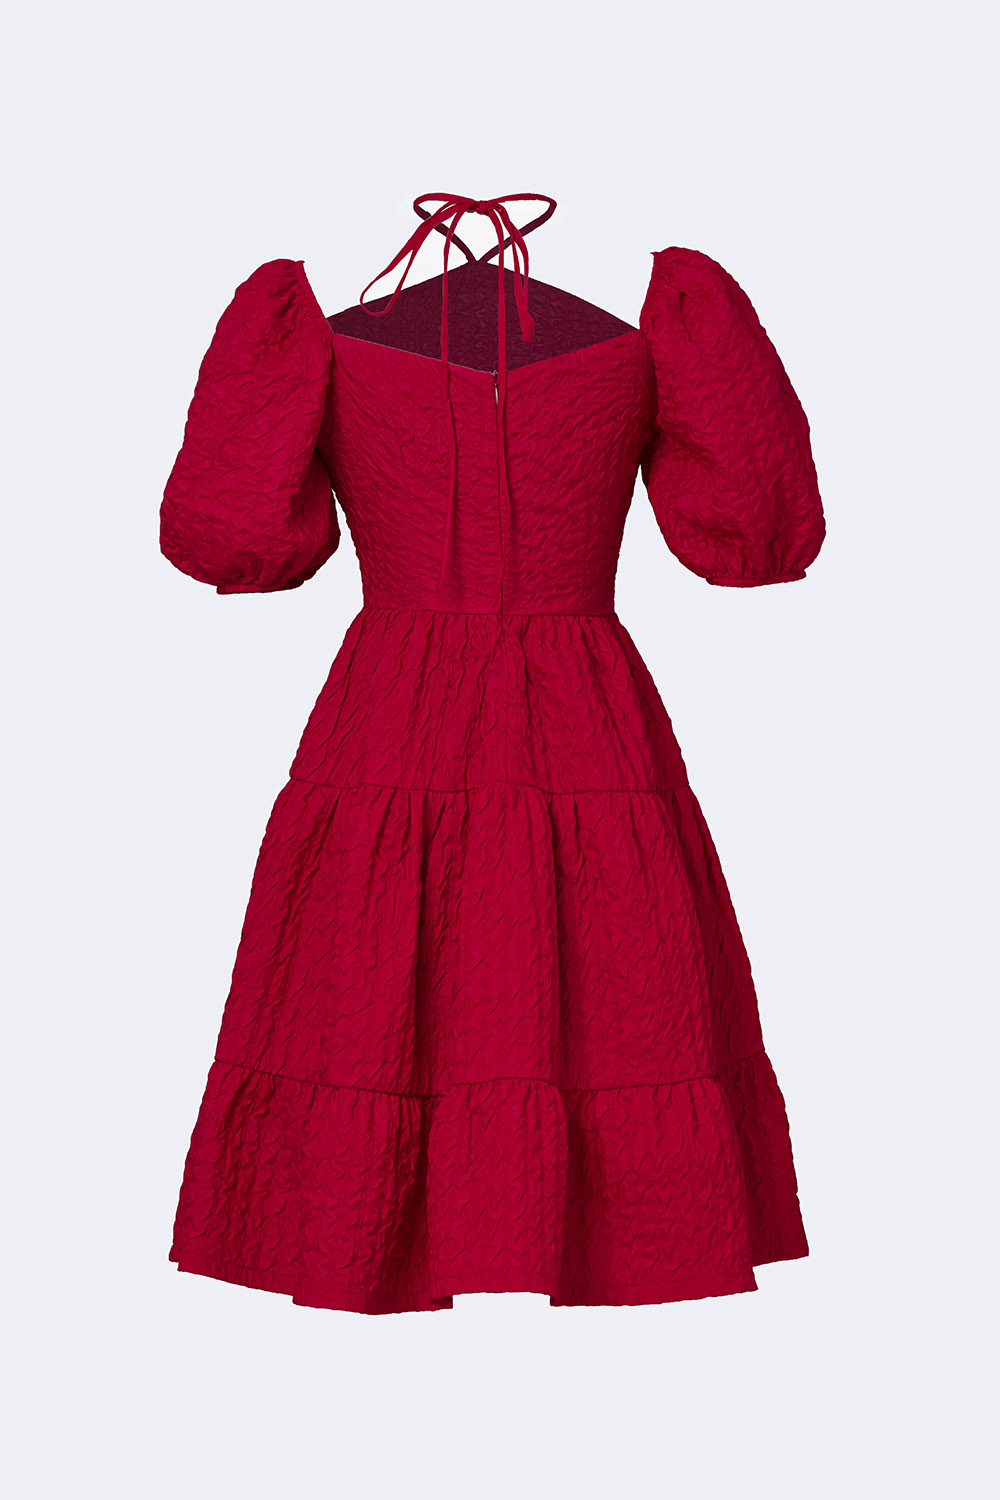 Váy xòe đỏ lượn eo tay bồng - 3666